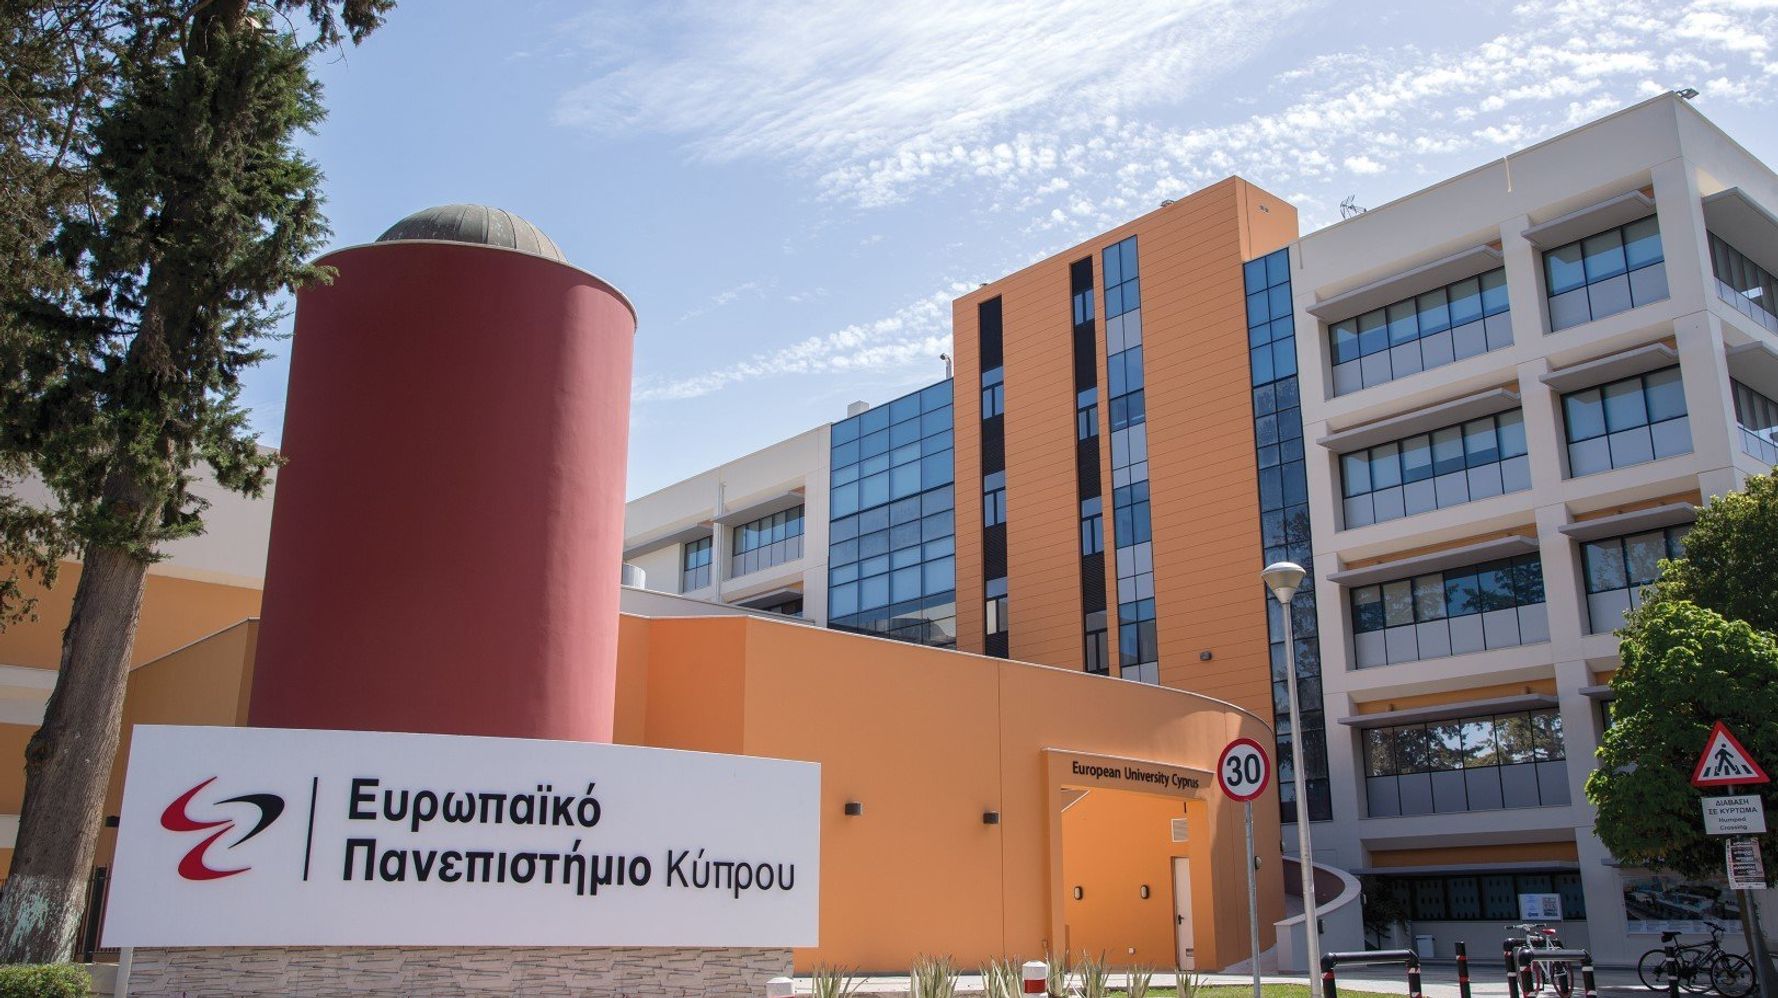 Πρωτόκολλο Συνεργασίας μεταξύ Ευρωπαϊκού Πανεπιστημίου Κύπρου και Εθνικού και Καποδιστριακού Πανεπιστημίου Αθηνών σε ΠΜΣ Ειδικής Αγωγής